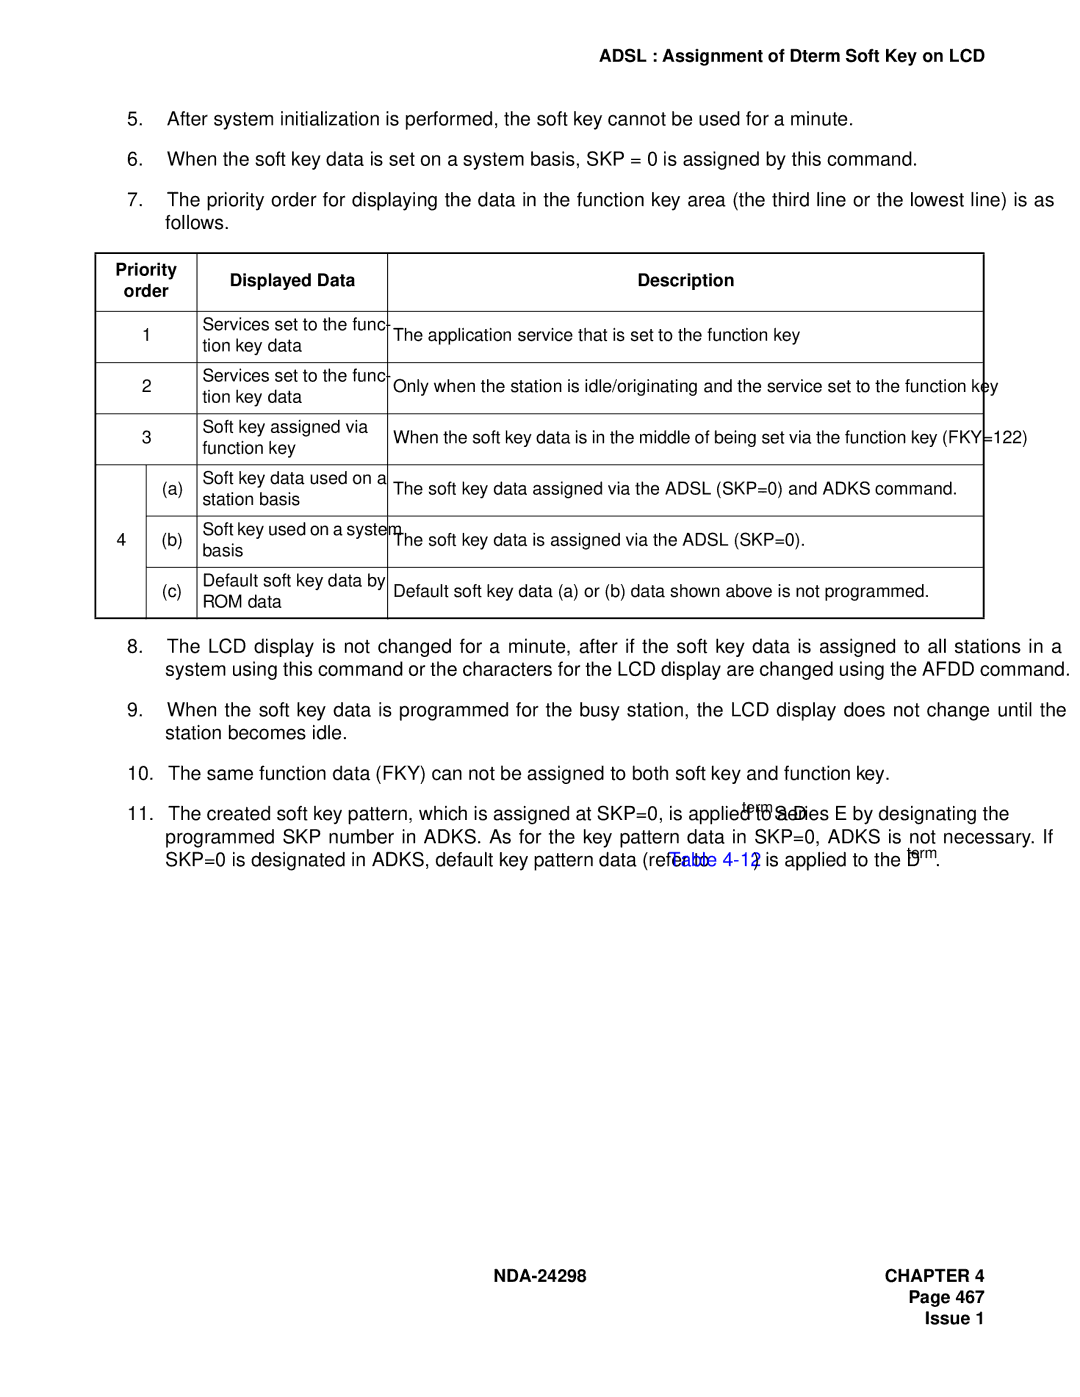 NEC NDA-24298 manual Priority Displayed Data Description Order 